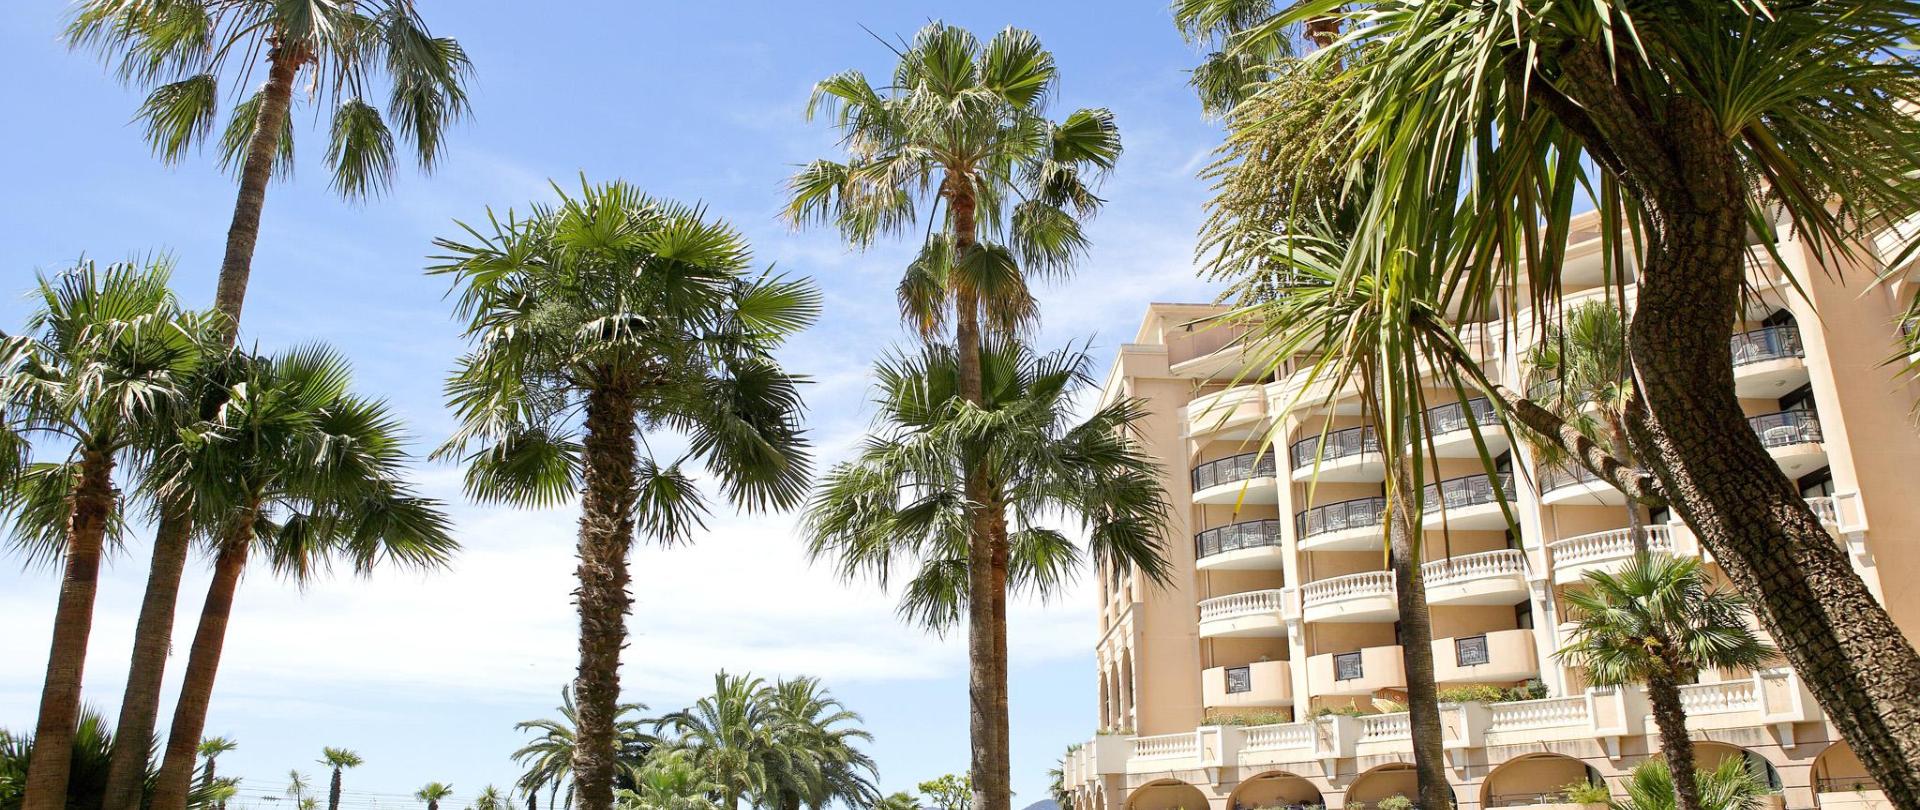 Hotel-La Palme D'Azur-Cannes-Verrerie.jpg